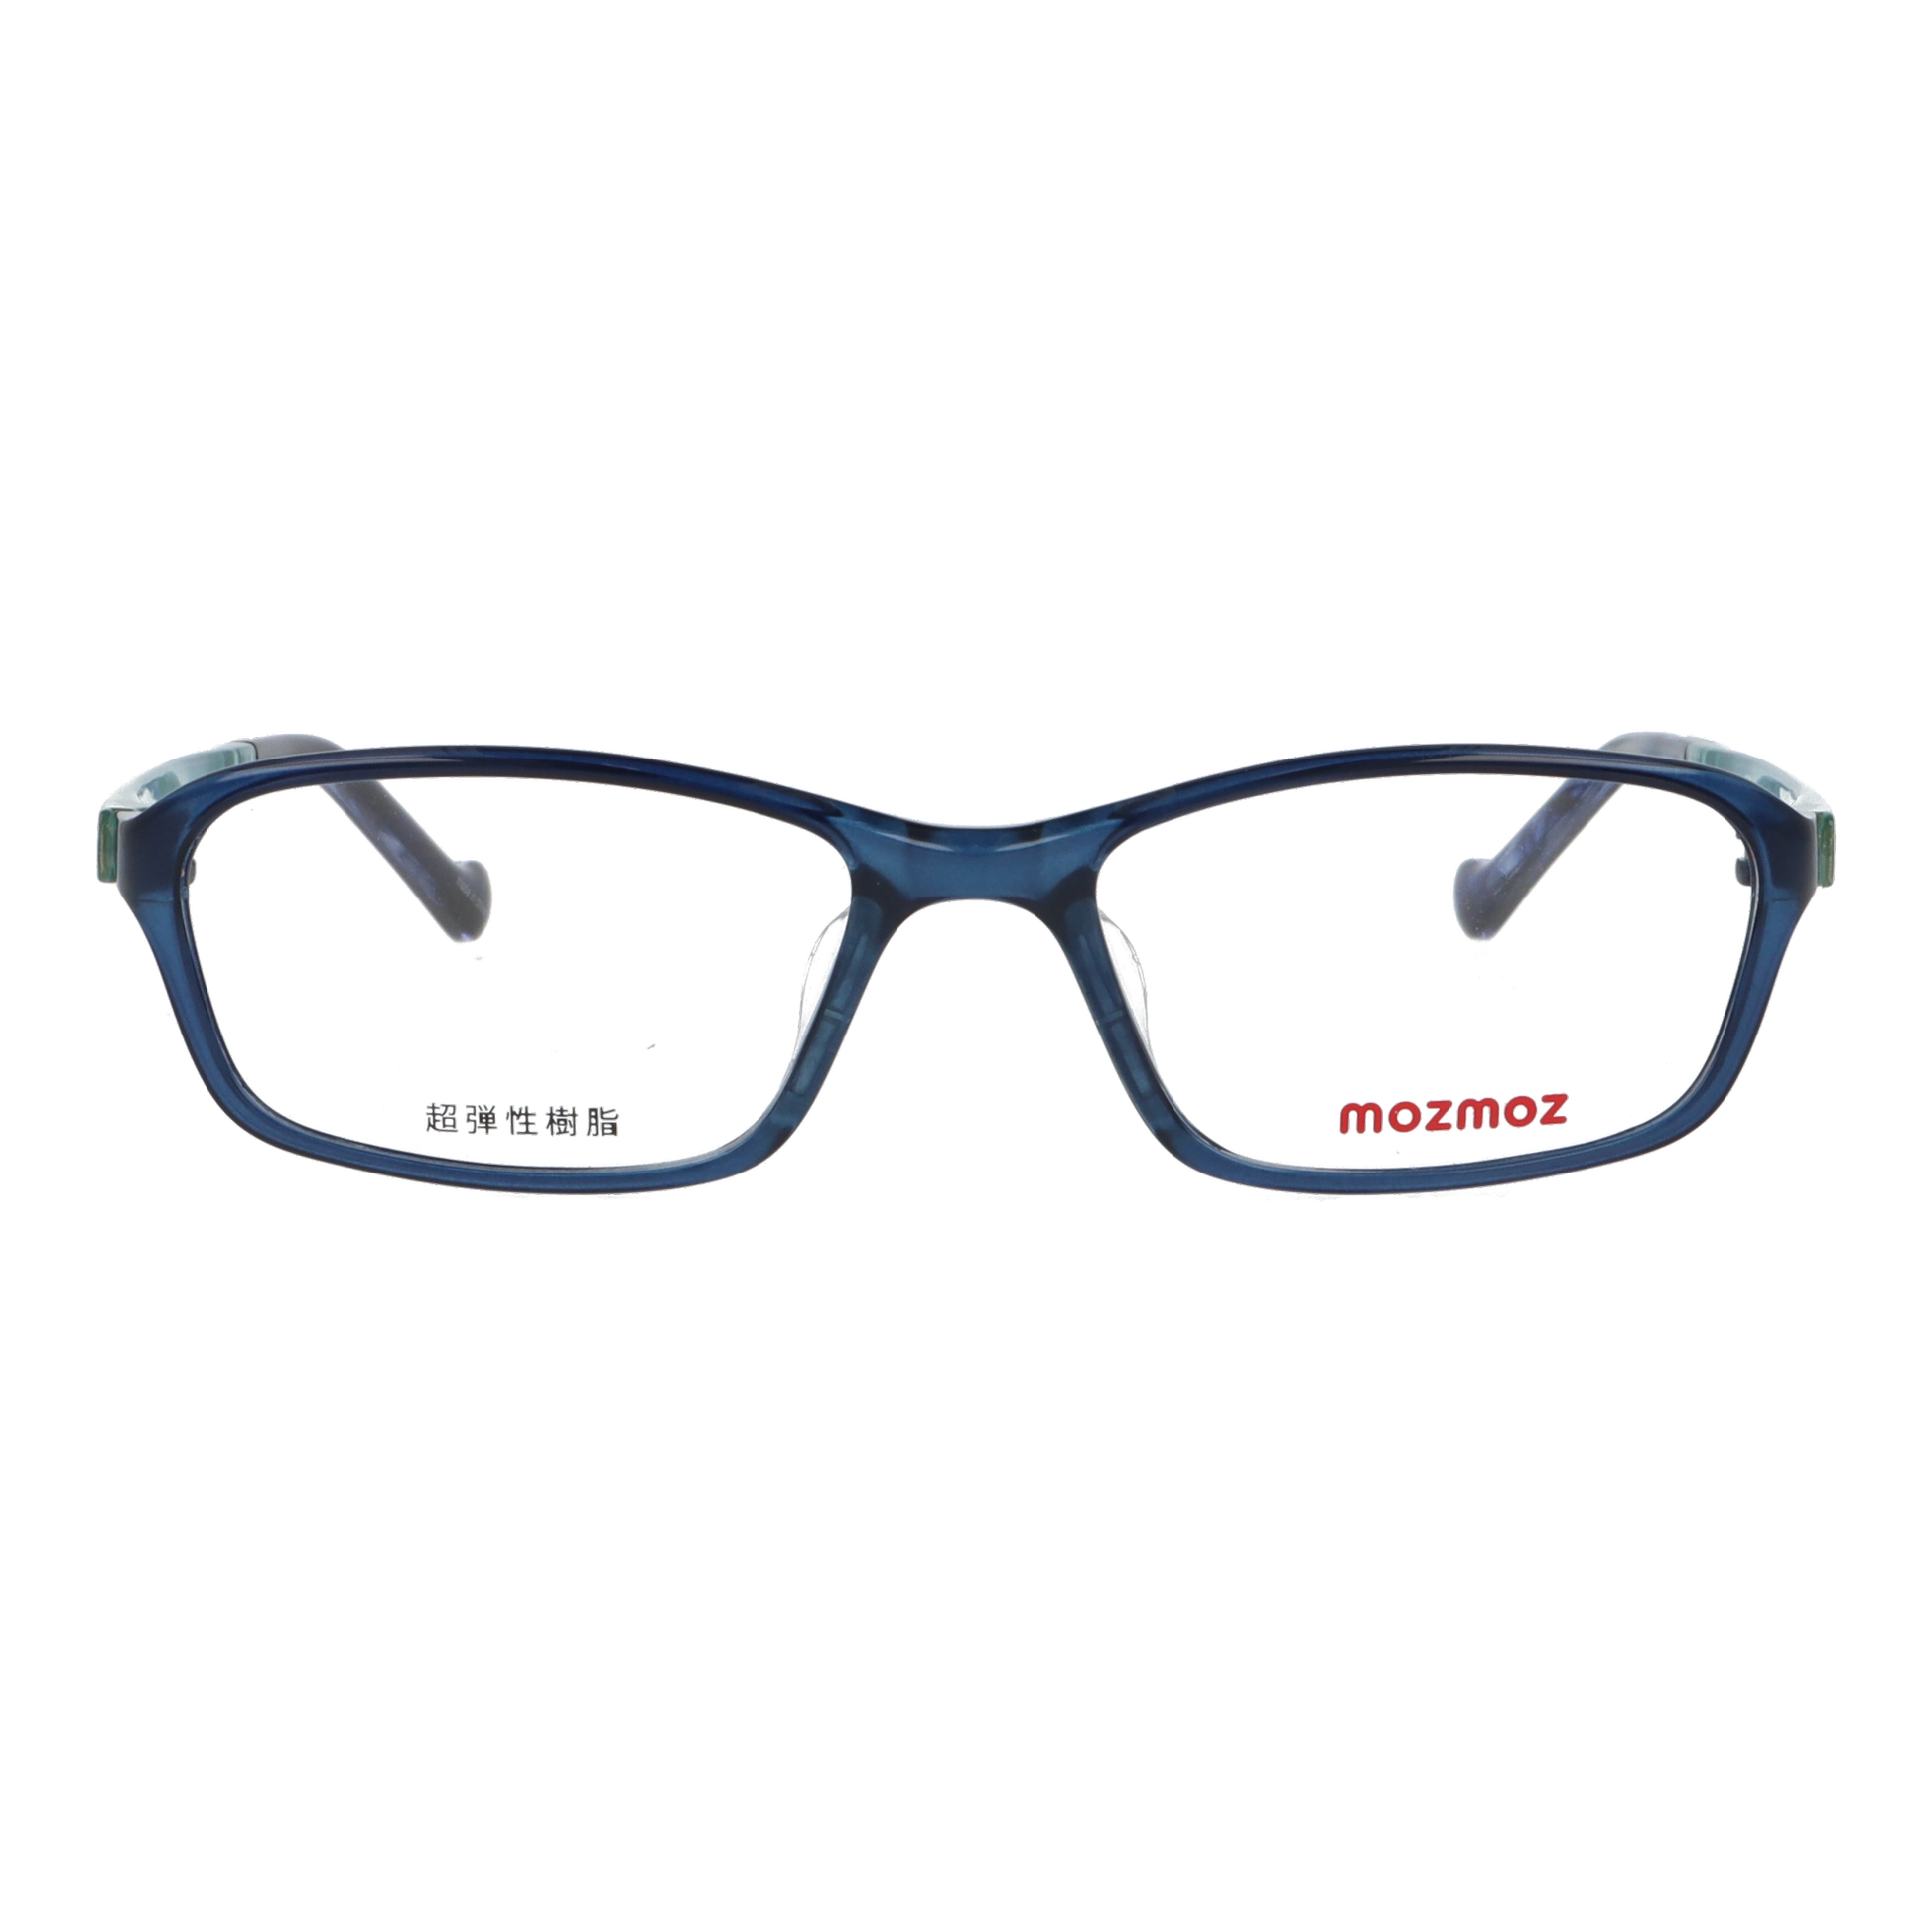 正面から見たアイウェア【軽量】こどもメガネ mo3003のカラーネイビー/ブルー